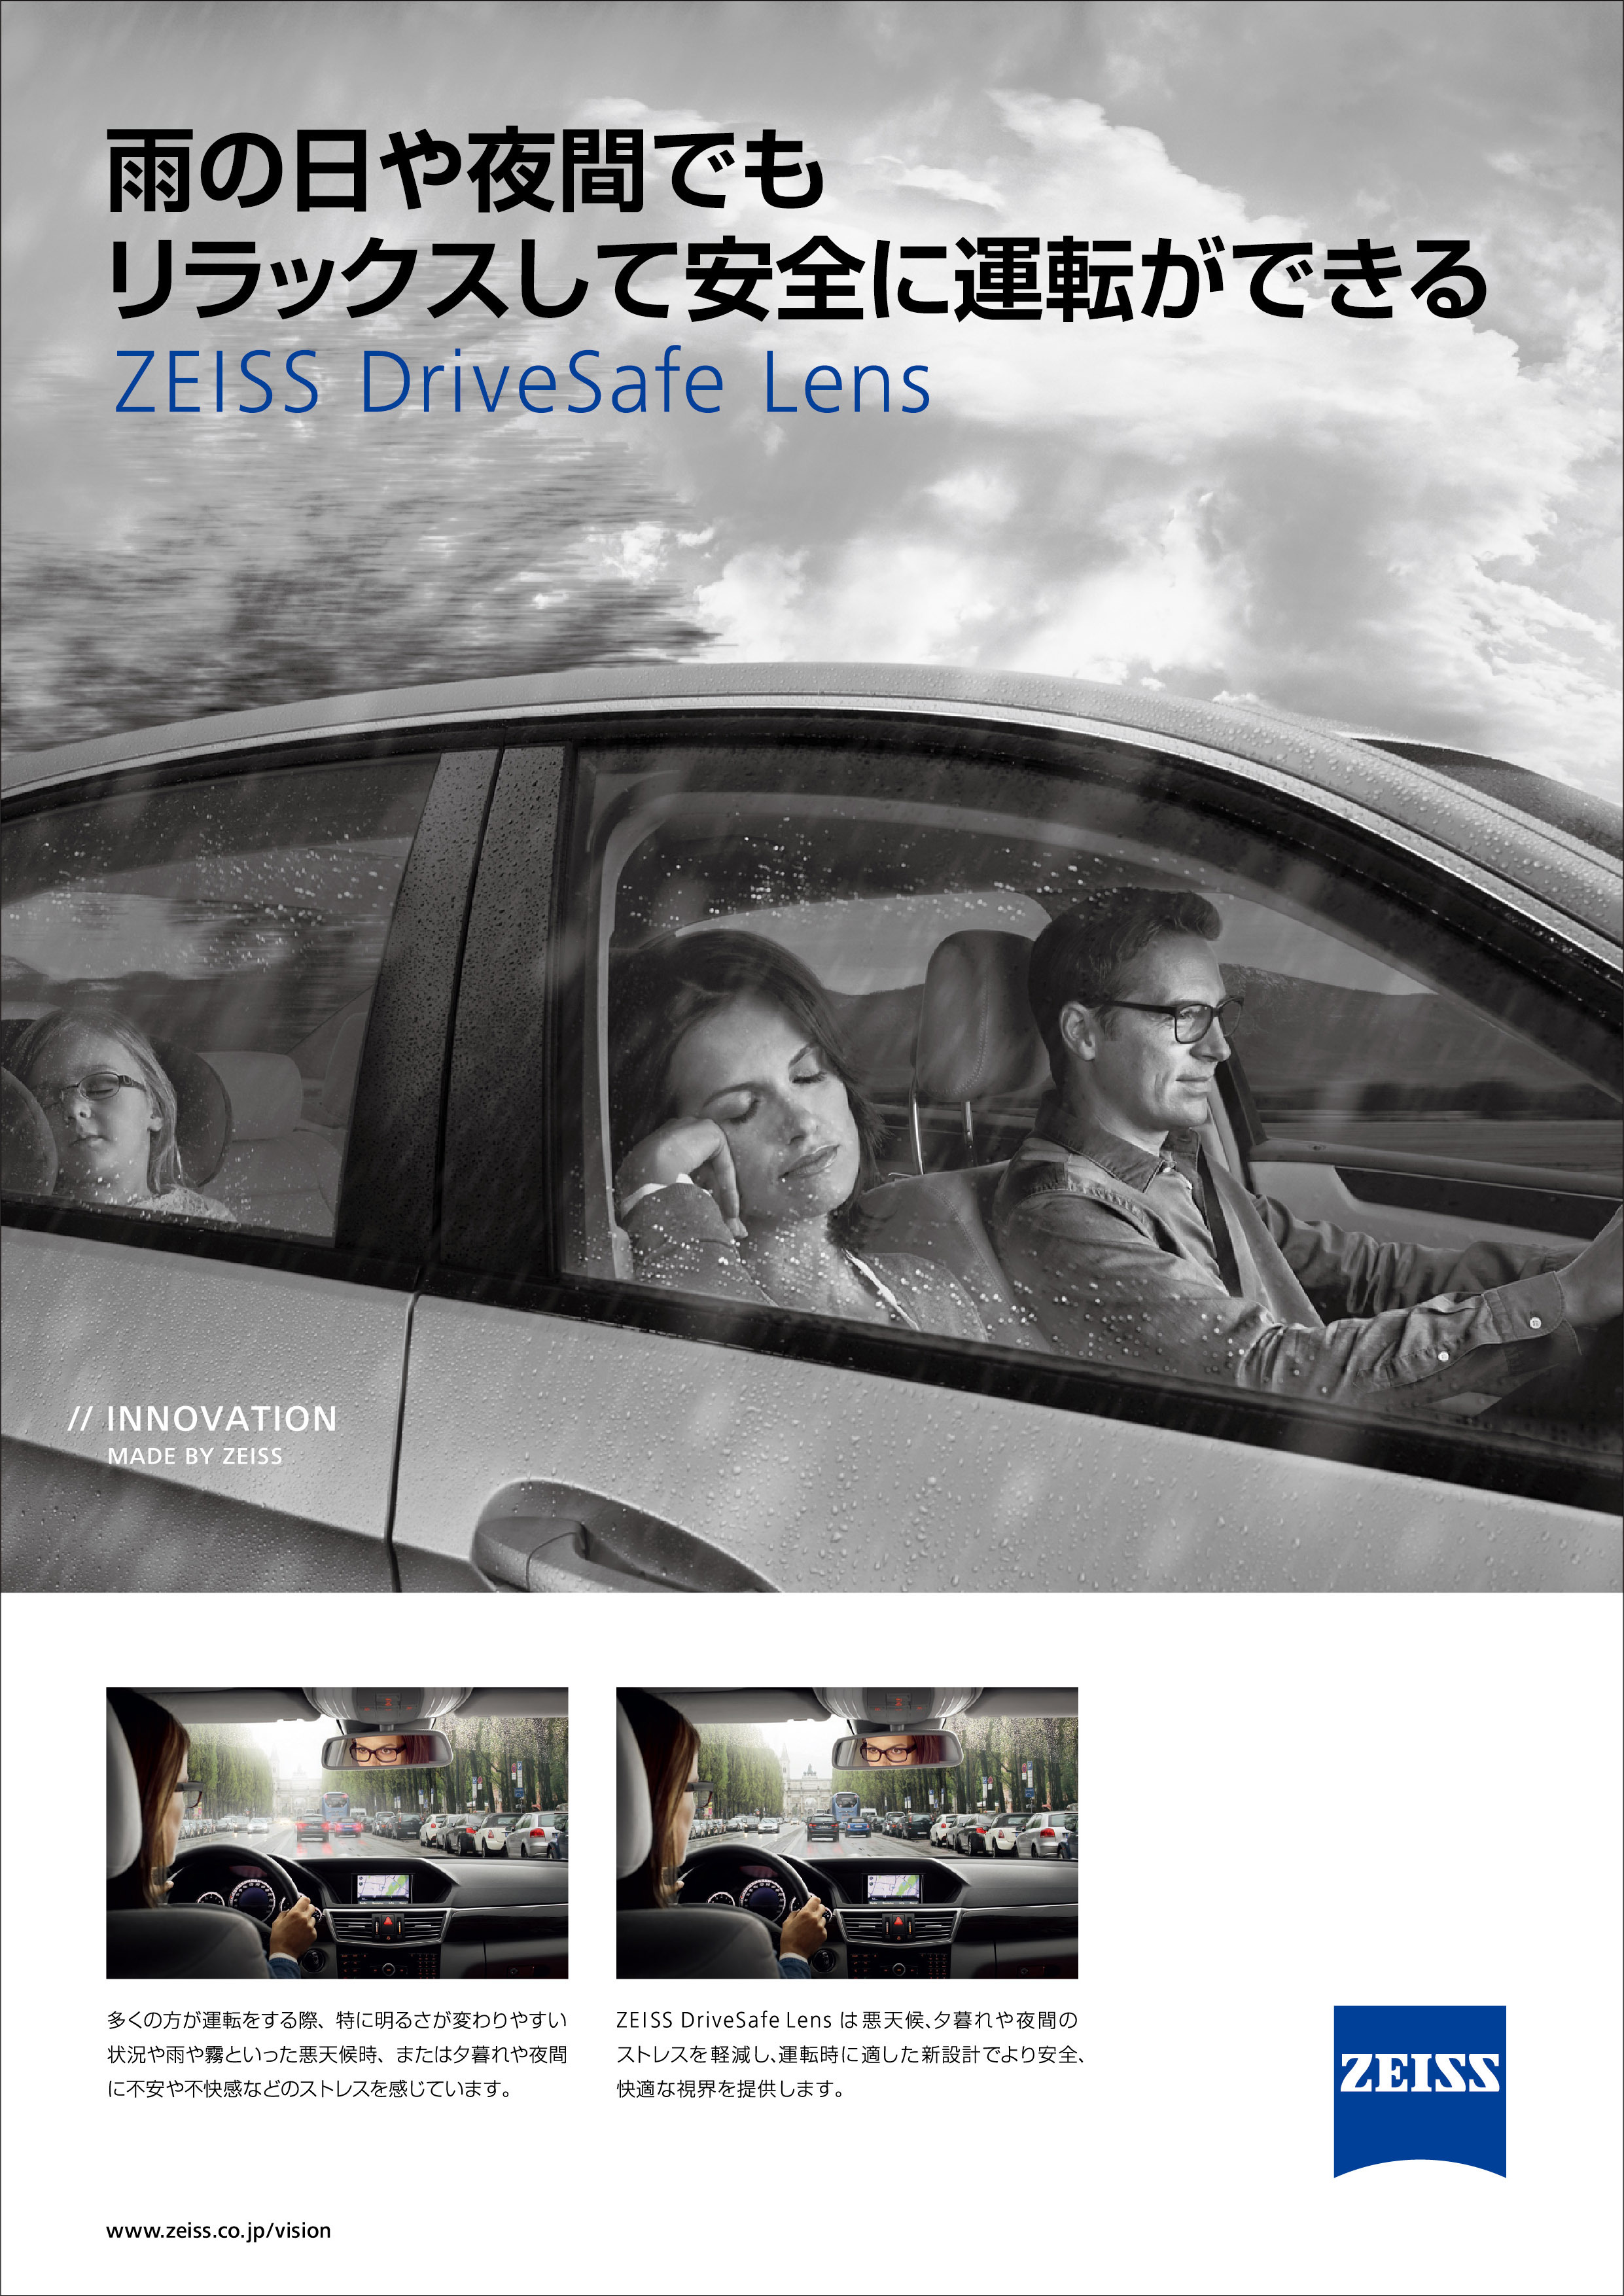 常用 ドライブ用が1本にまとまった新タイプメガネレンズ Zeiss Drivesafe Lens を提供開始 カールツァイス ビジョンジャパン株式会社のプレスリリース